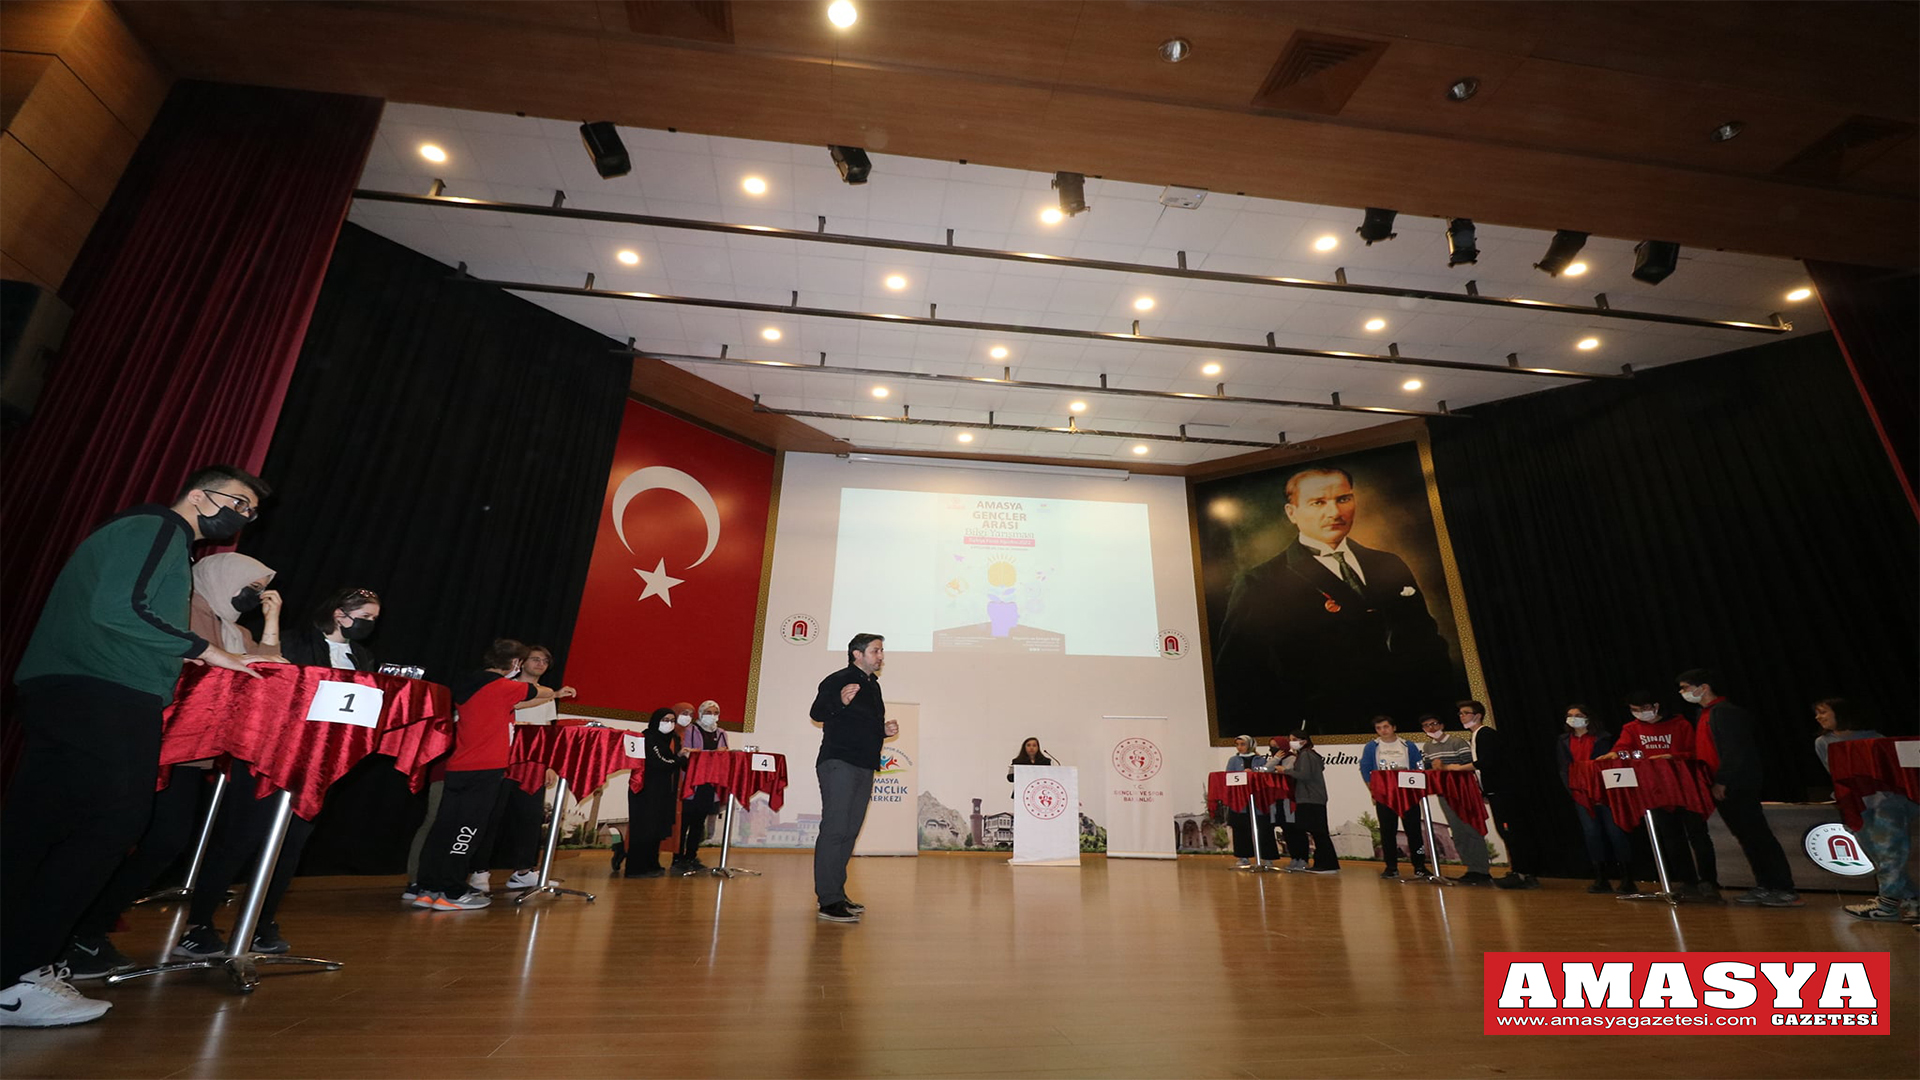 Amasya’da Gençler Arası Bilgi Yarışması düzenlendi